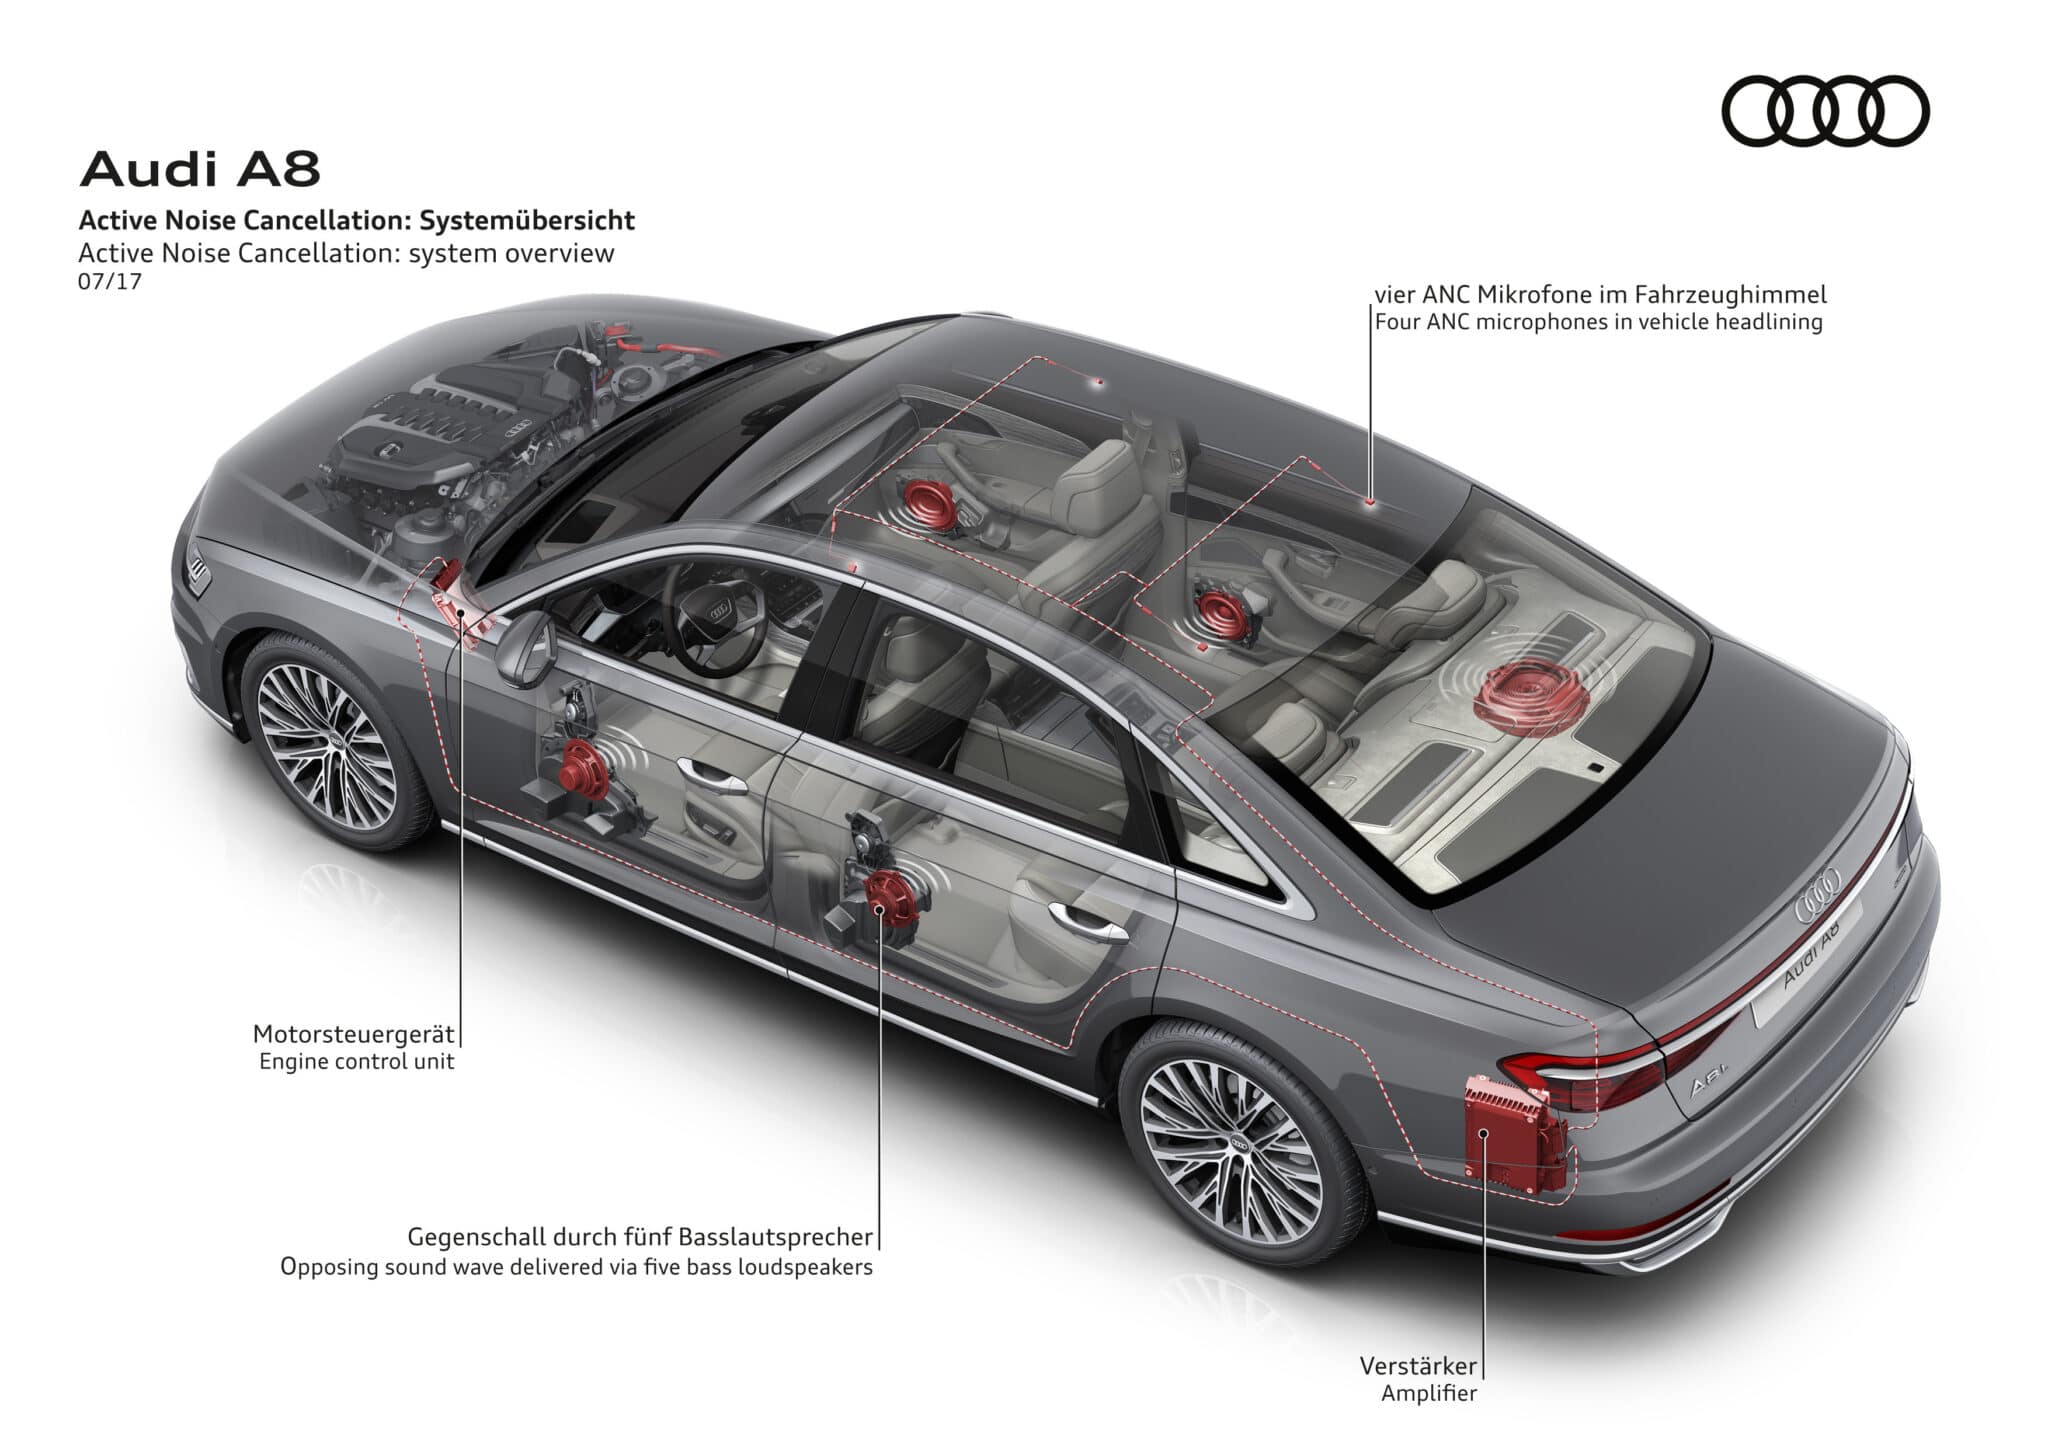 Panoramica del sistema di cancellazione attiva dei rumori - Crediti foto: Audi